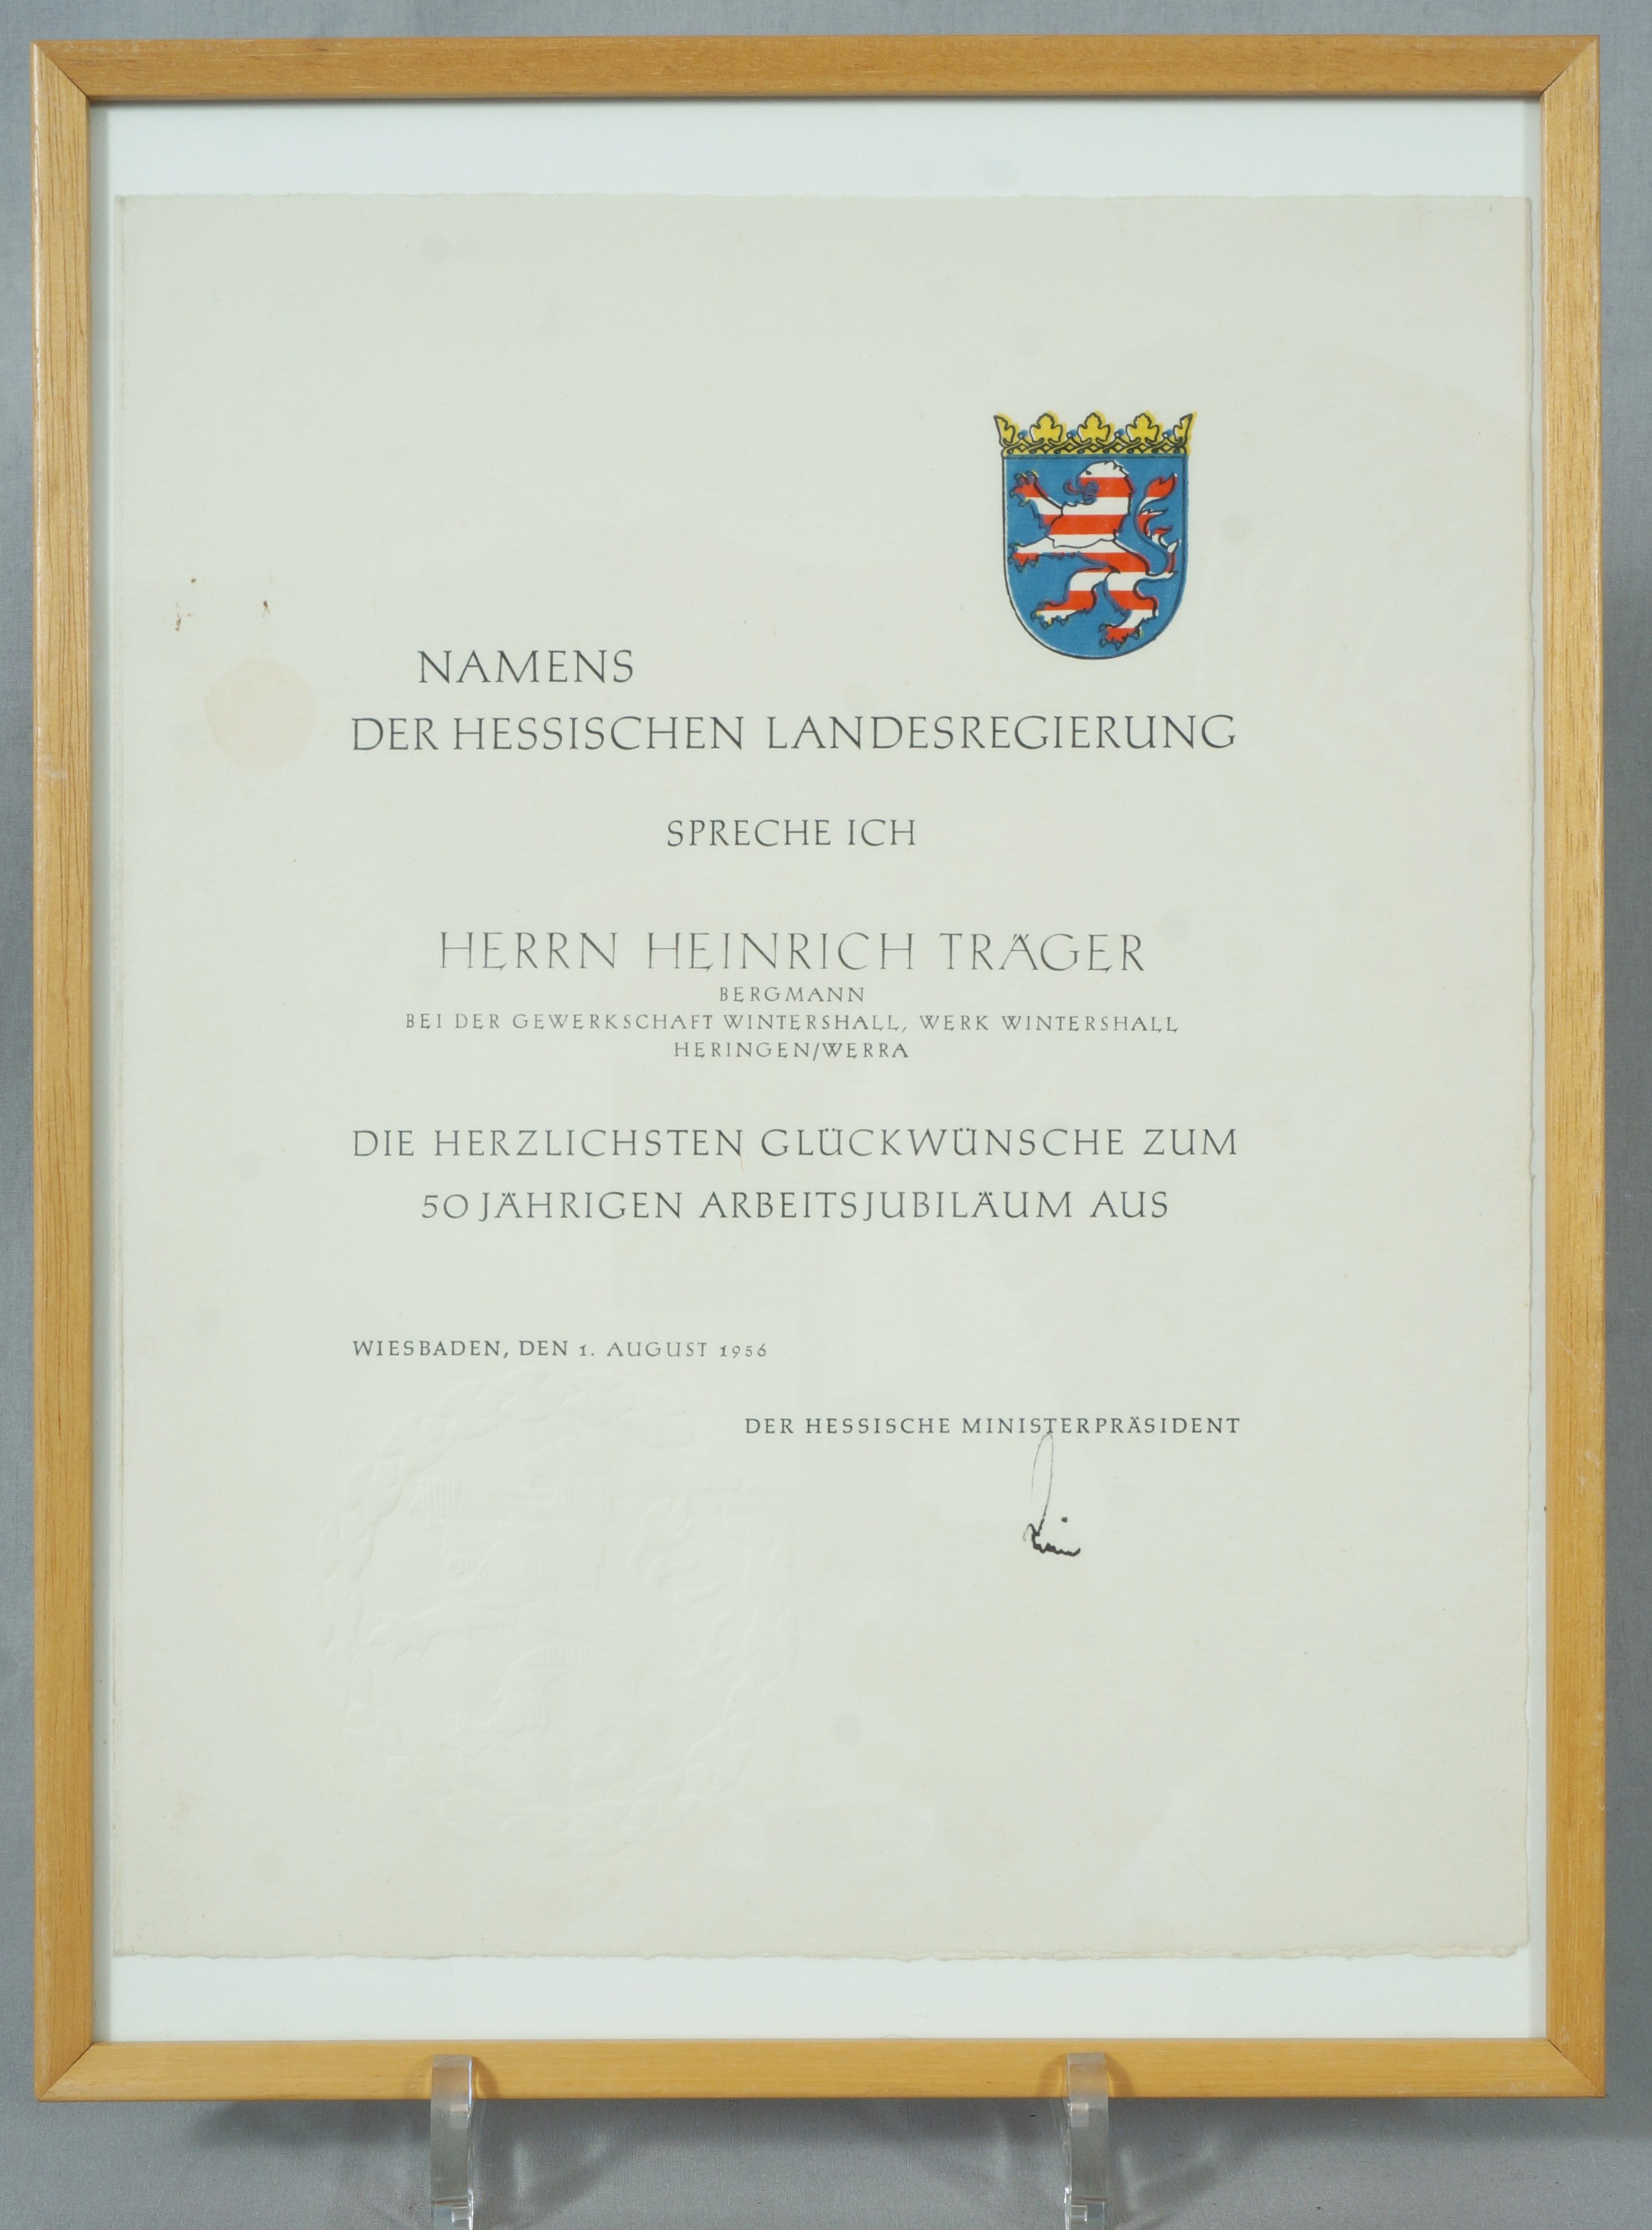 Urkunde zum 50-jährigen Dienstjubiläum bei der Gewerkschaft Wintershall (Hessische Landesregierung) (Werra-Kalibergbau-Museum, Heringen/W. CC BY-NC-SA)